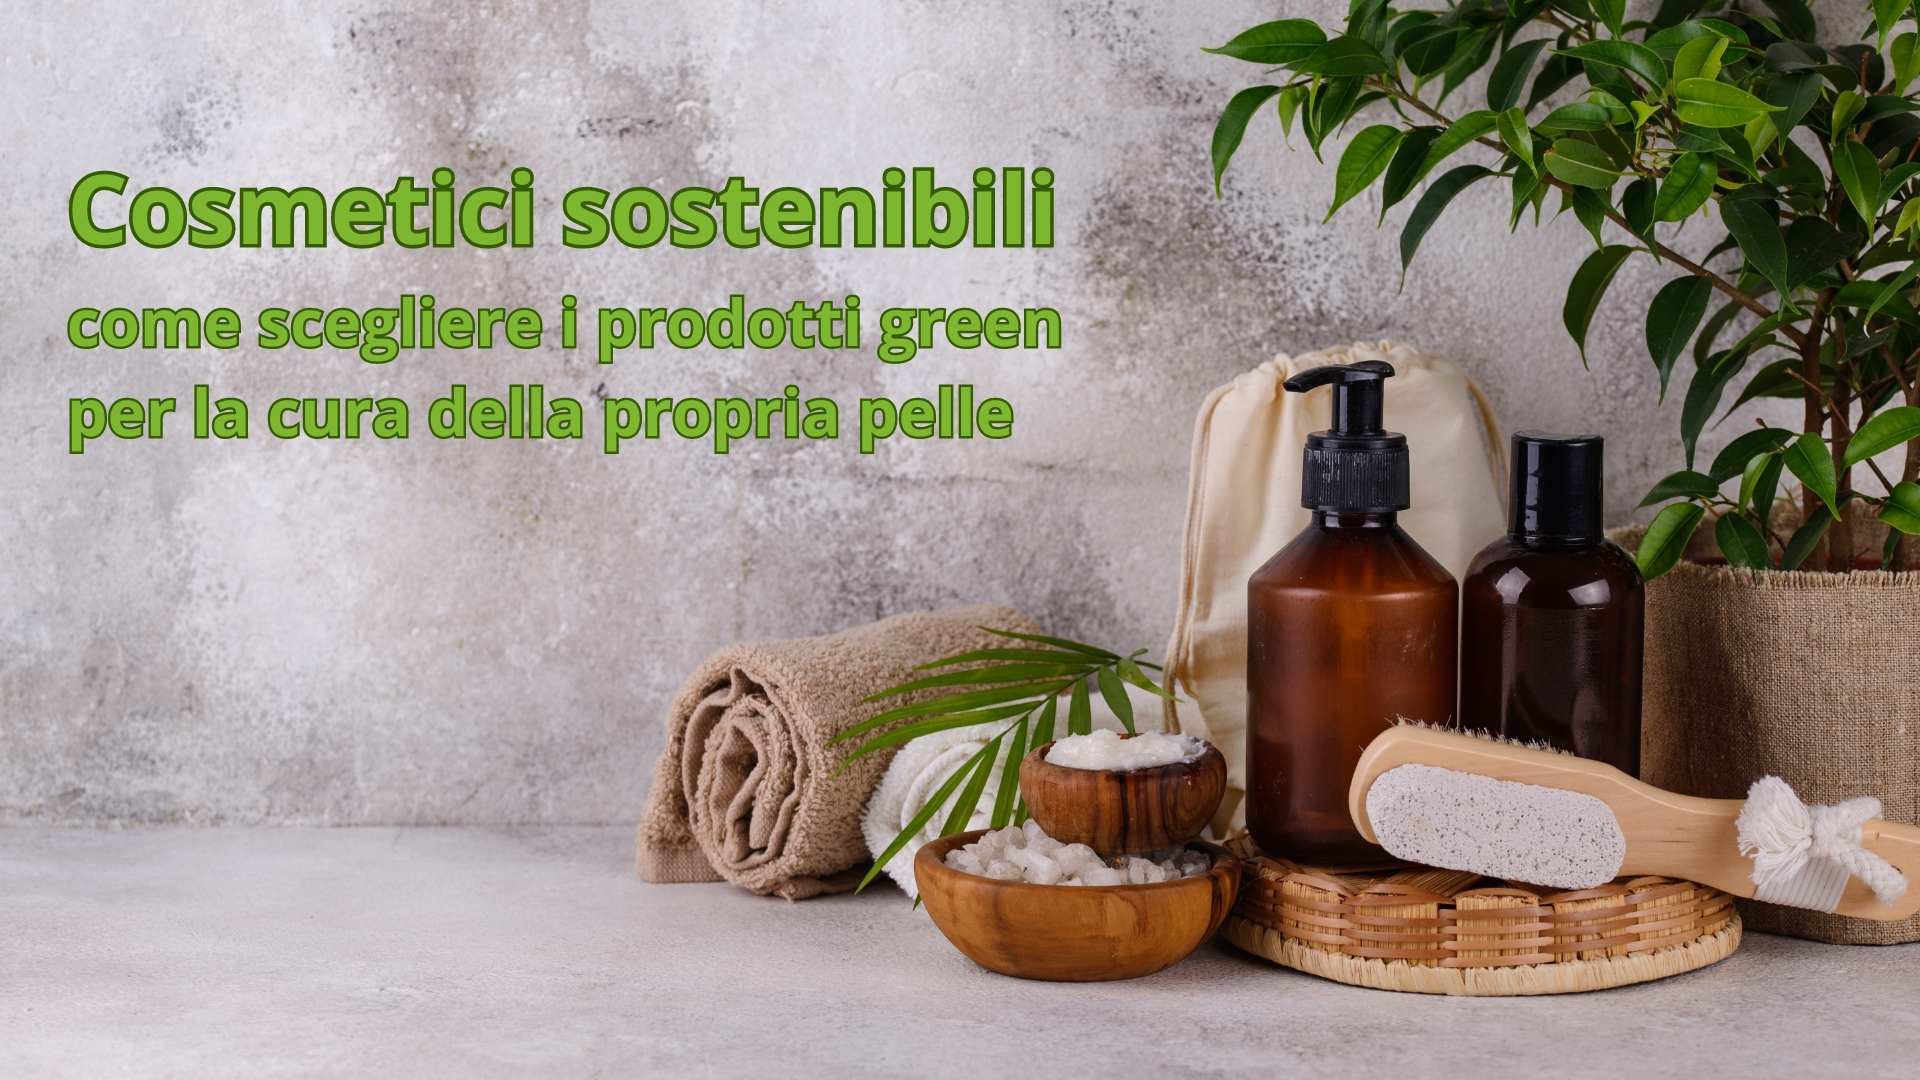 Cosmetici sostenibili: come scegliere i prodotti green per la cura della propria pelle